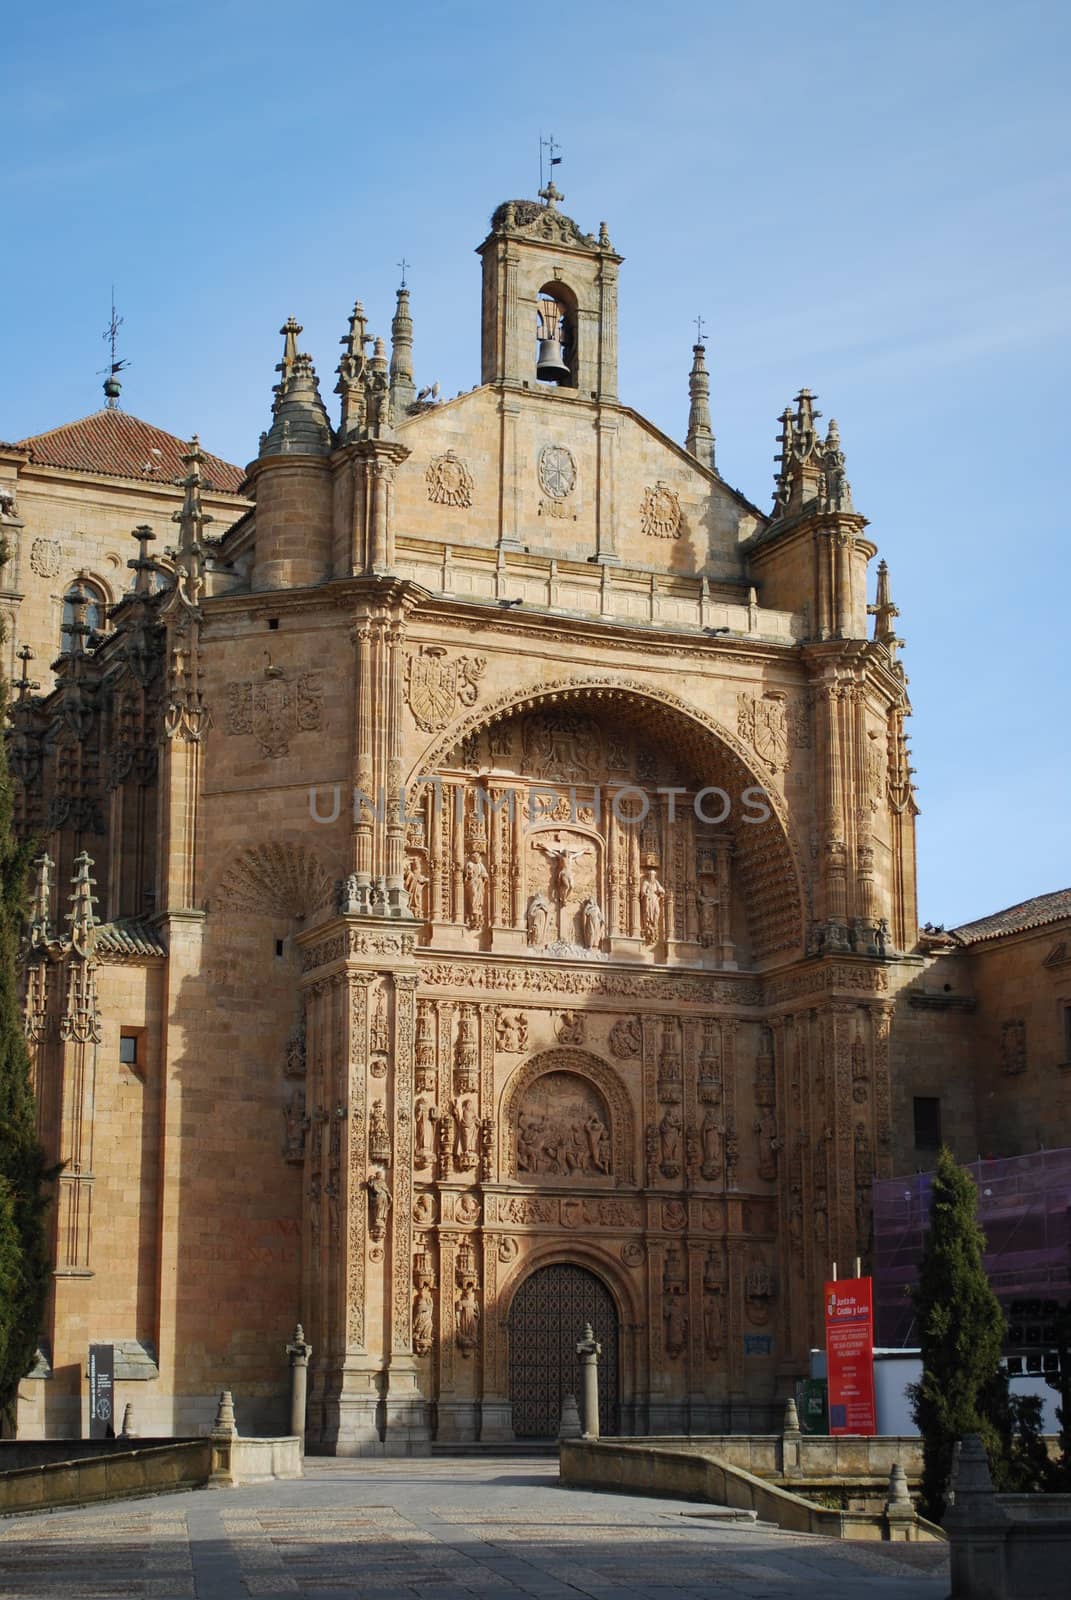 place of worship, convent of Salamanca